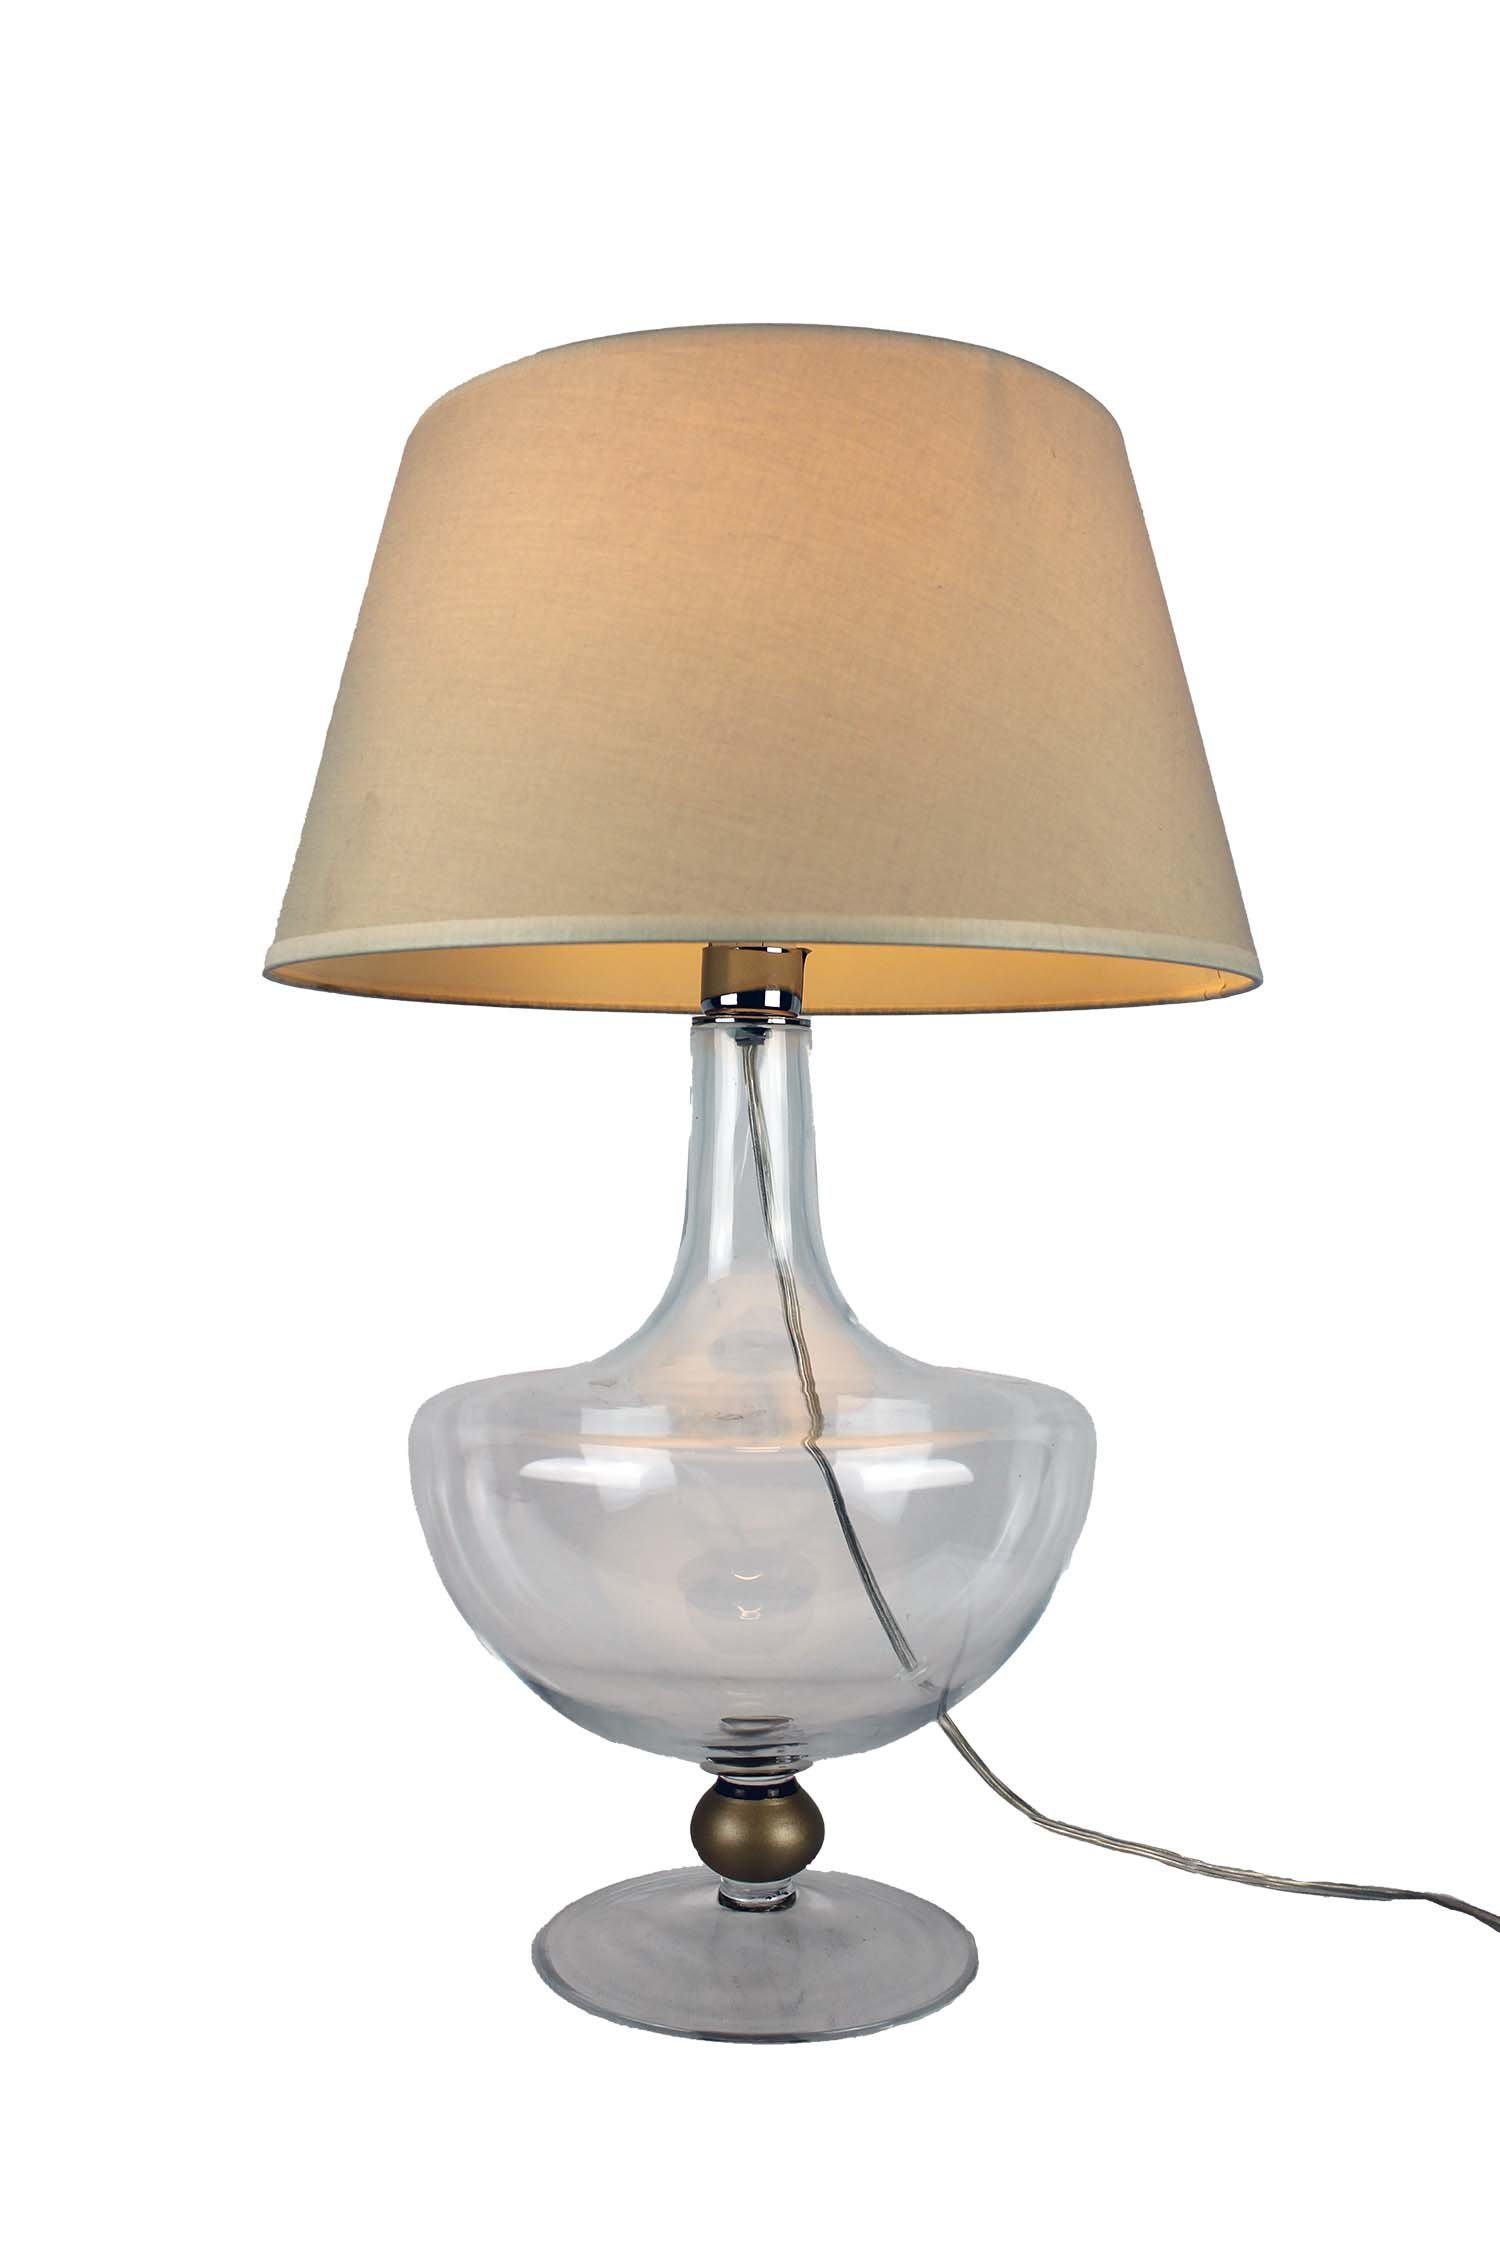 Signature Home Collection Nachttischlampe Glaslampe klar bauchig klassisch mit Lampenschirm, ohne Leuchtmittel, warmweiß, Glaslampe im klassischen Stil